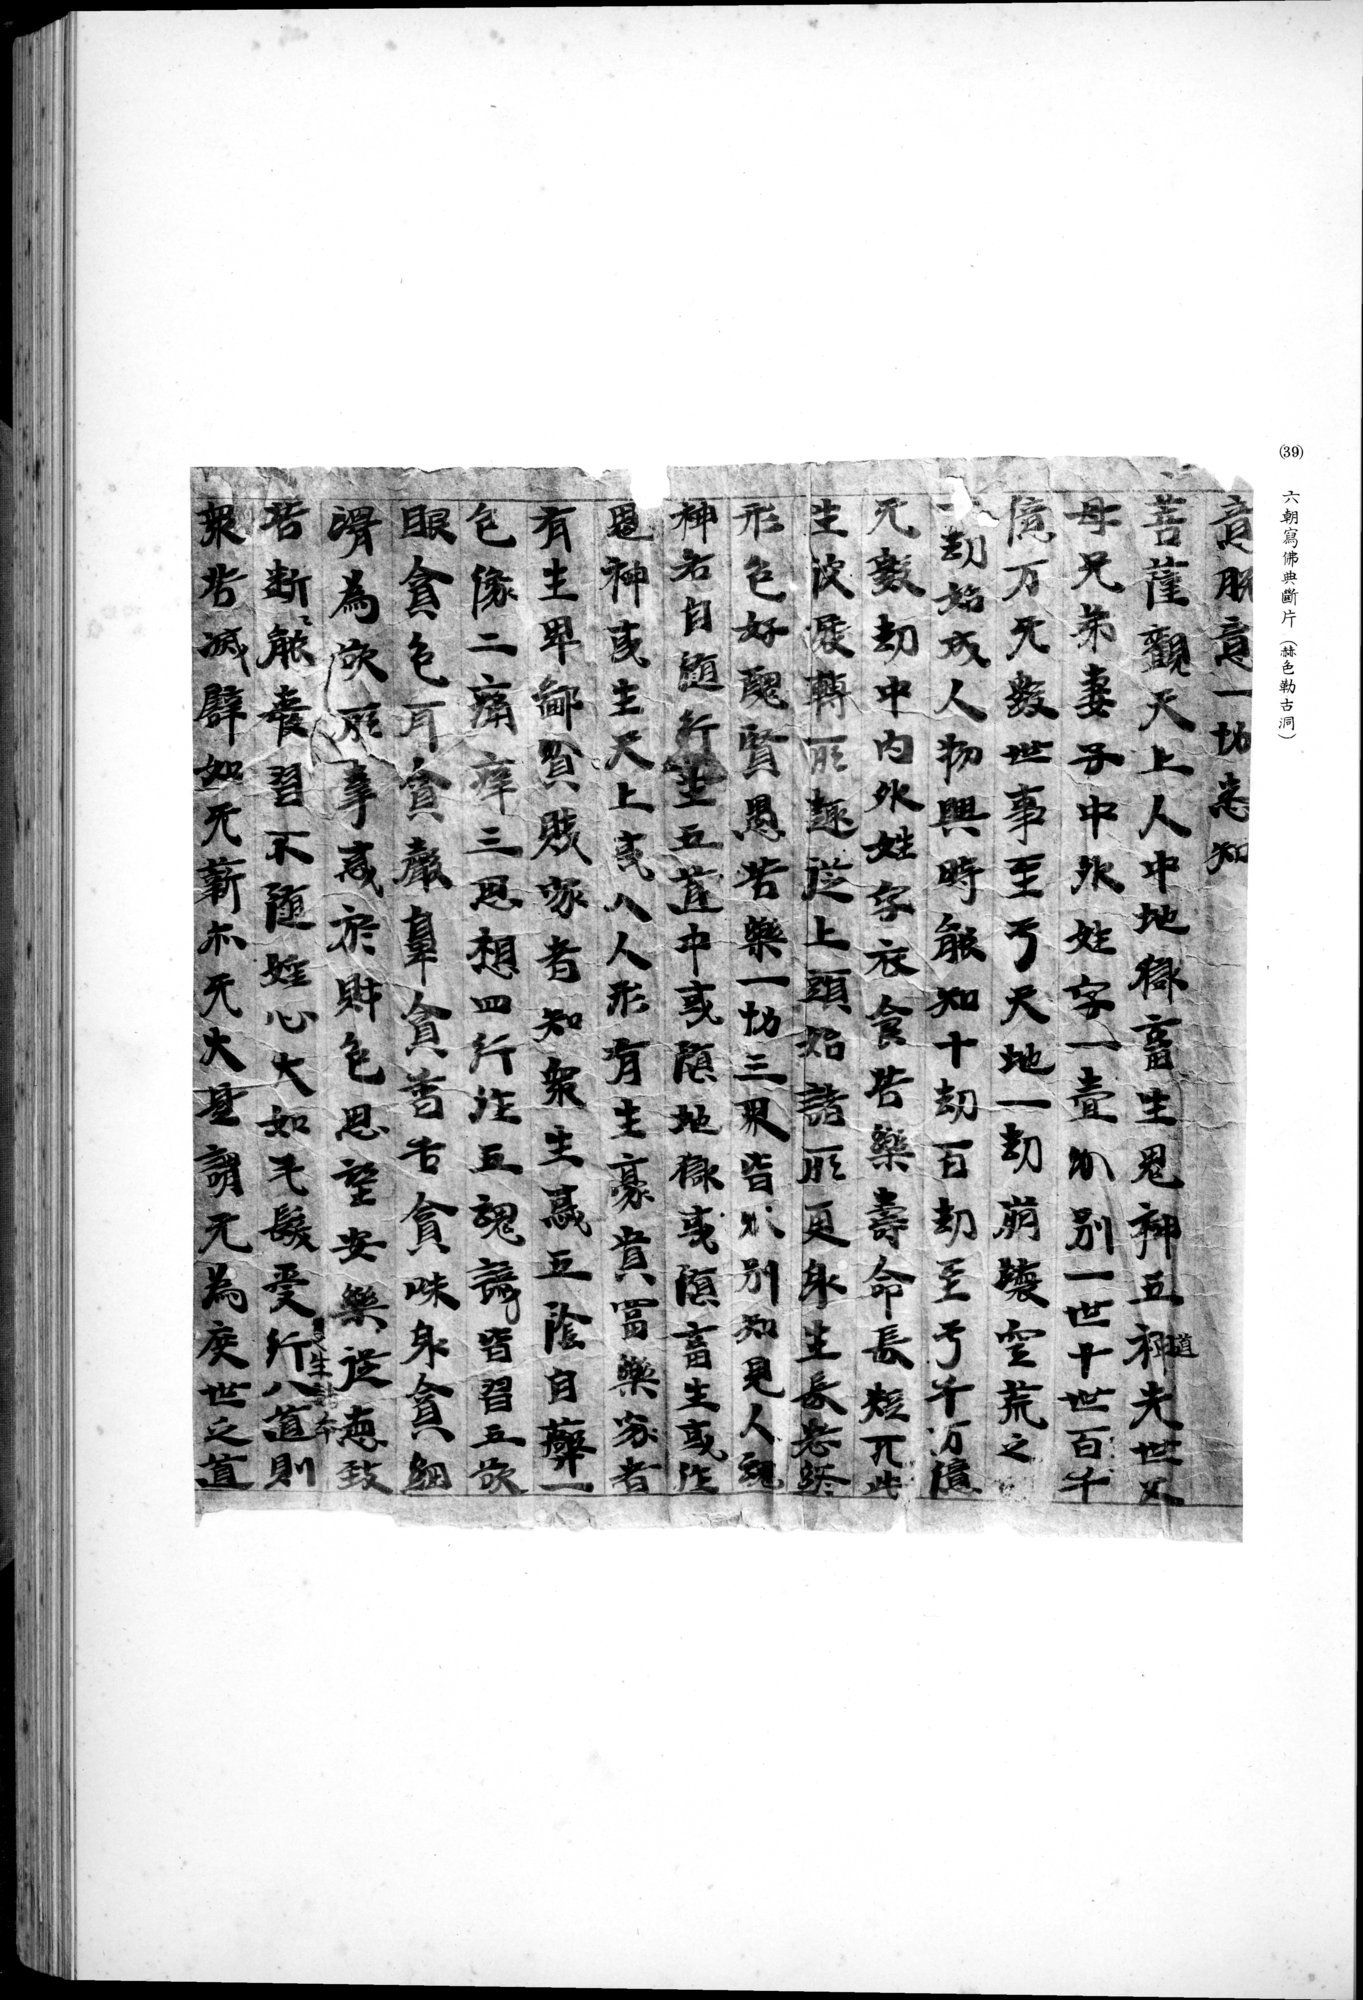 西域考古図譜 : vol.2 / 93 ページ（白黒高解像度画像）